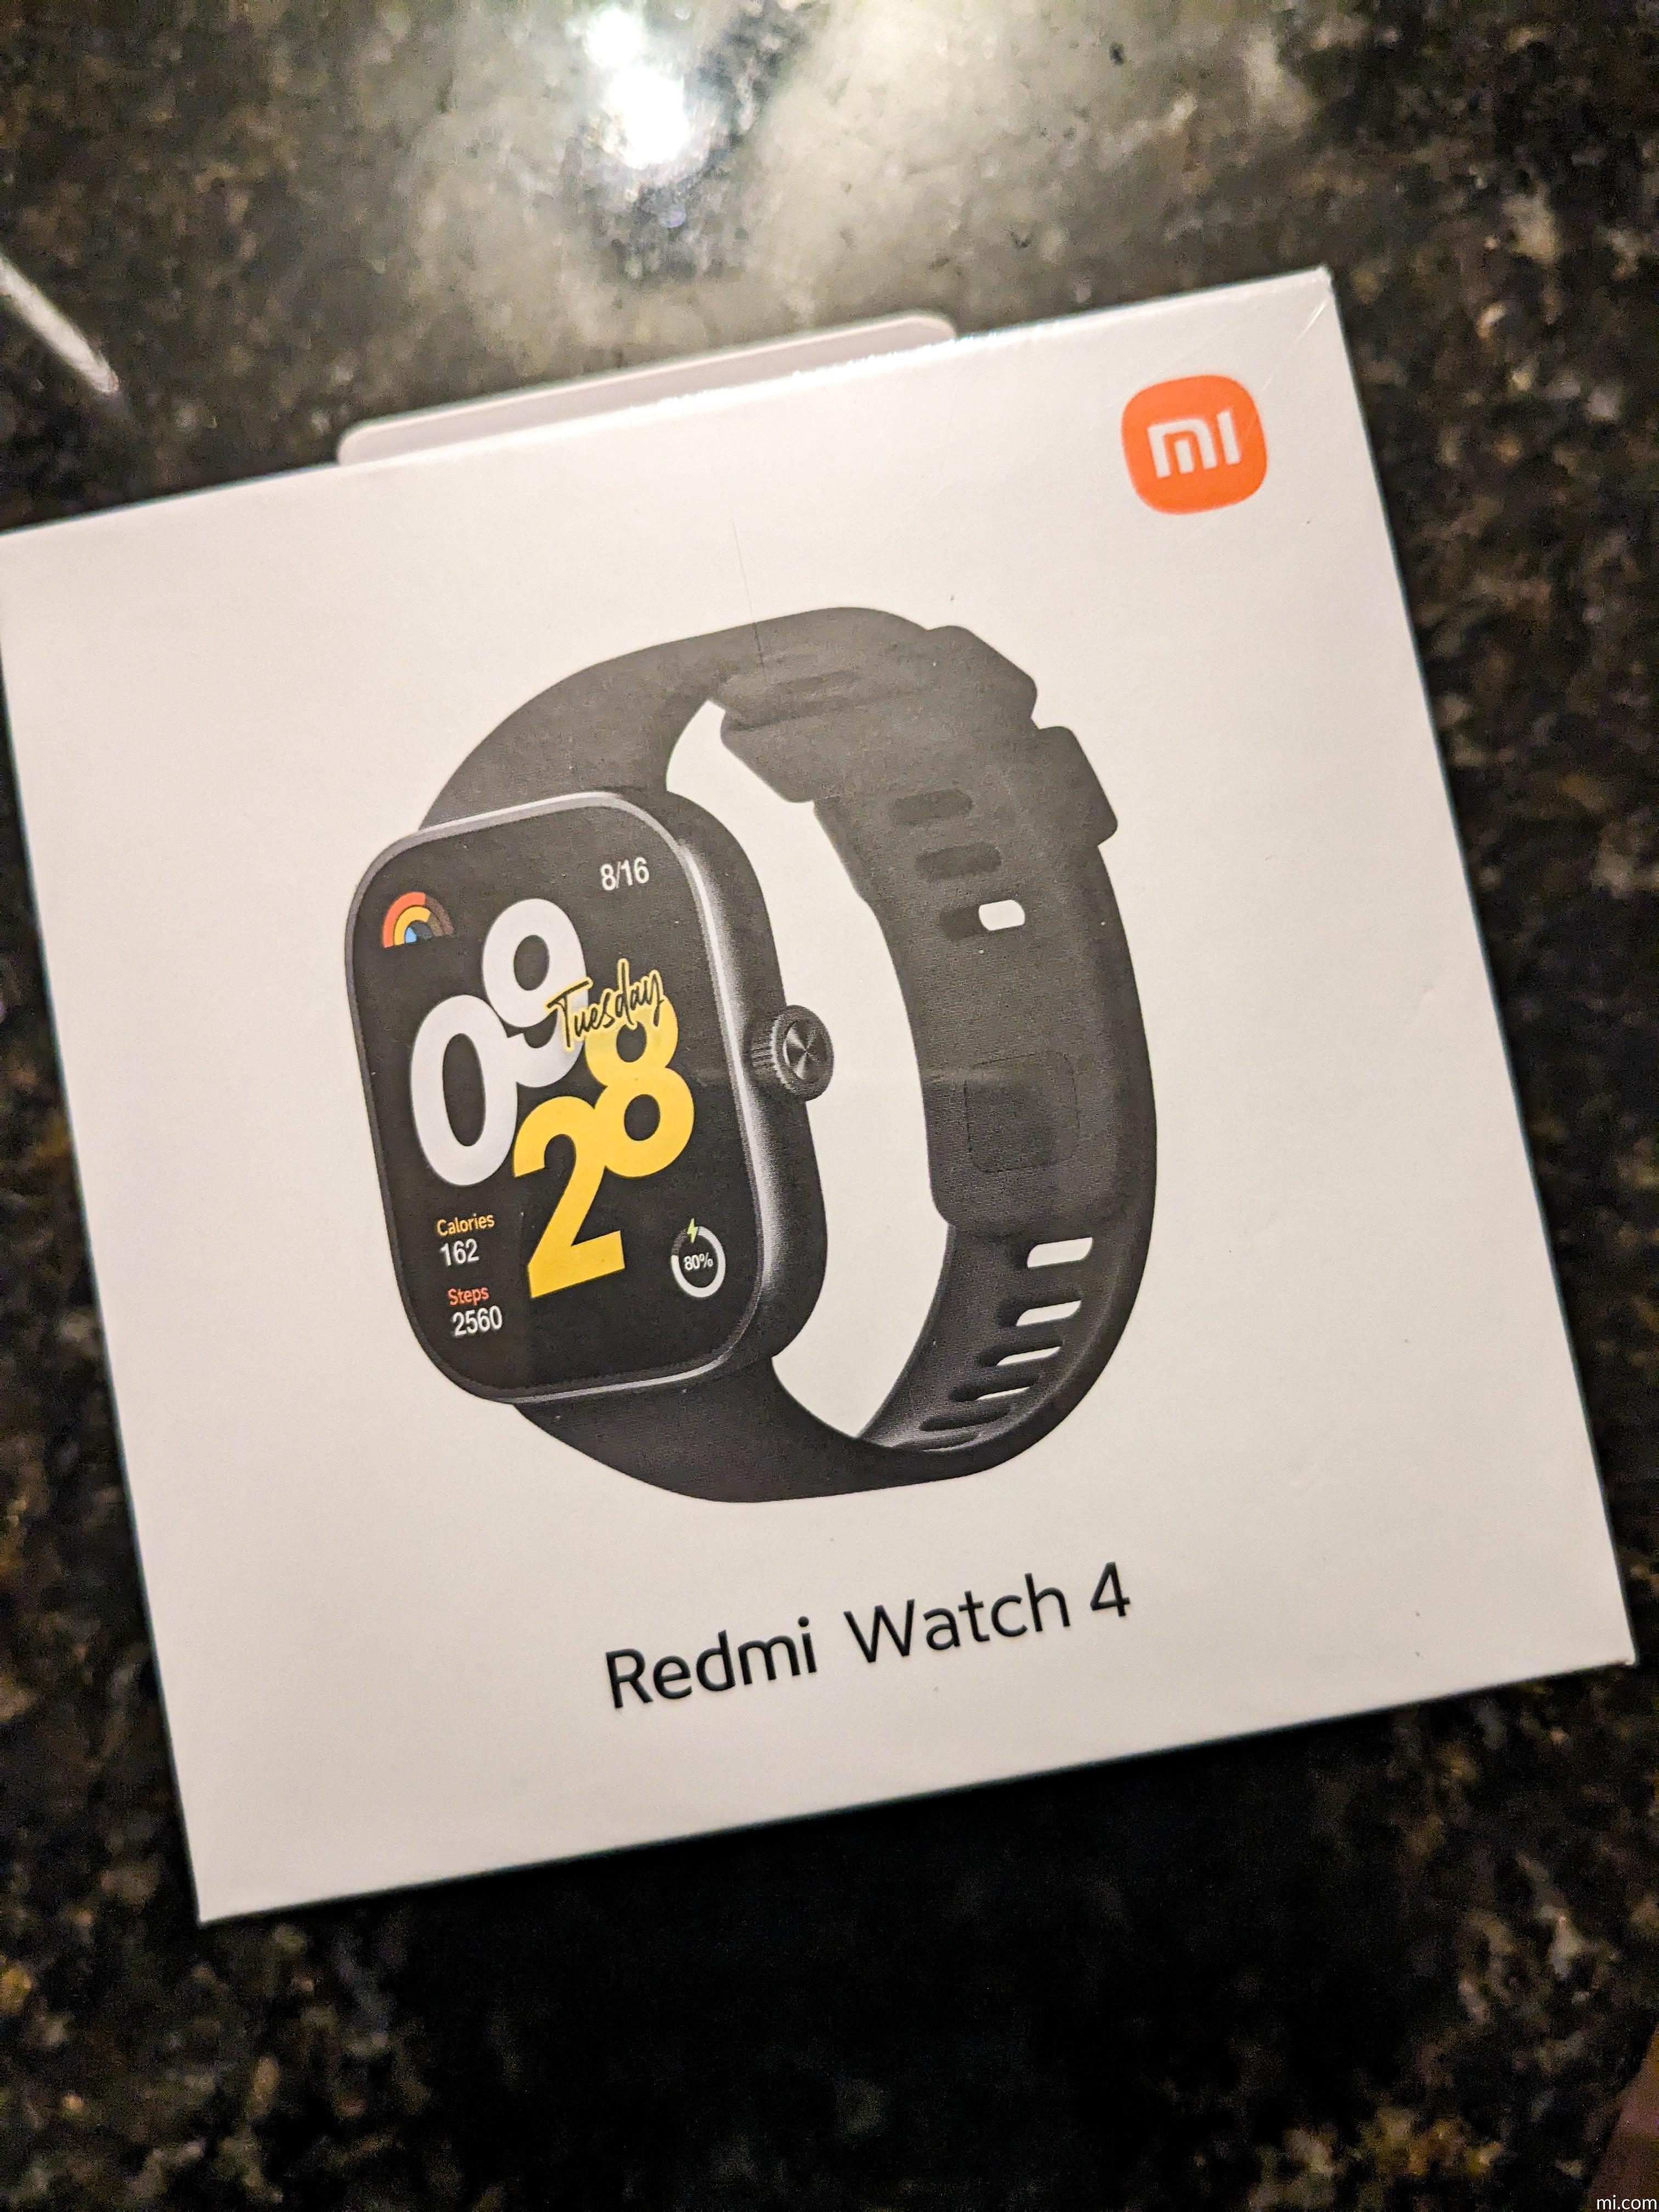 Redmi Watch 4 - Xiaomi UK